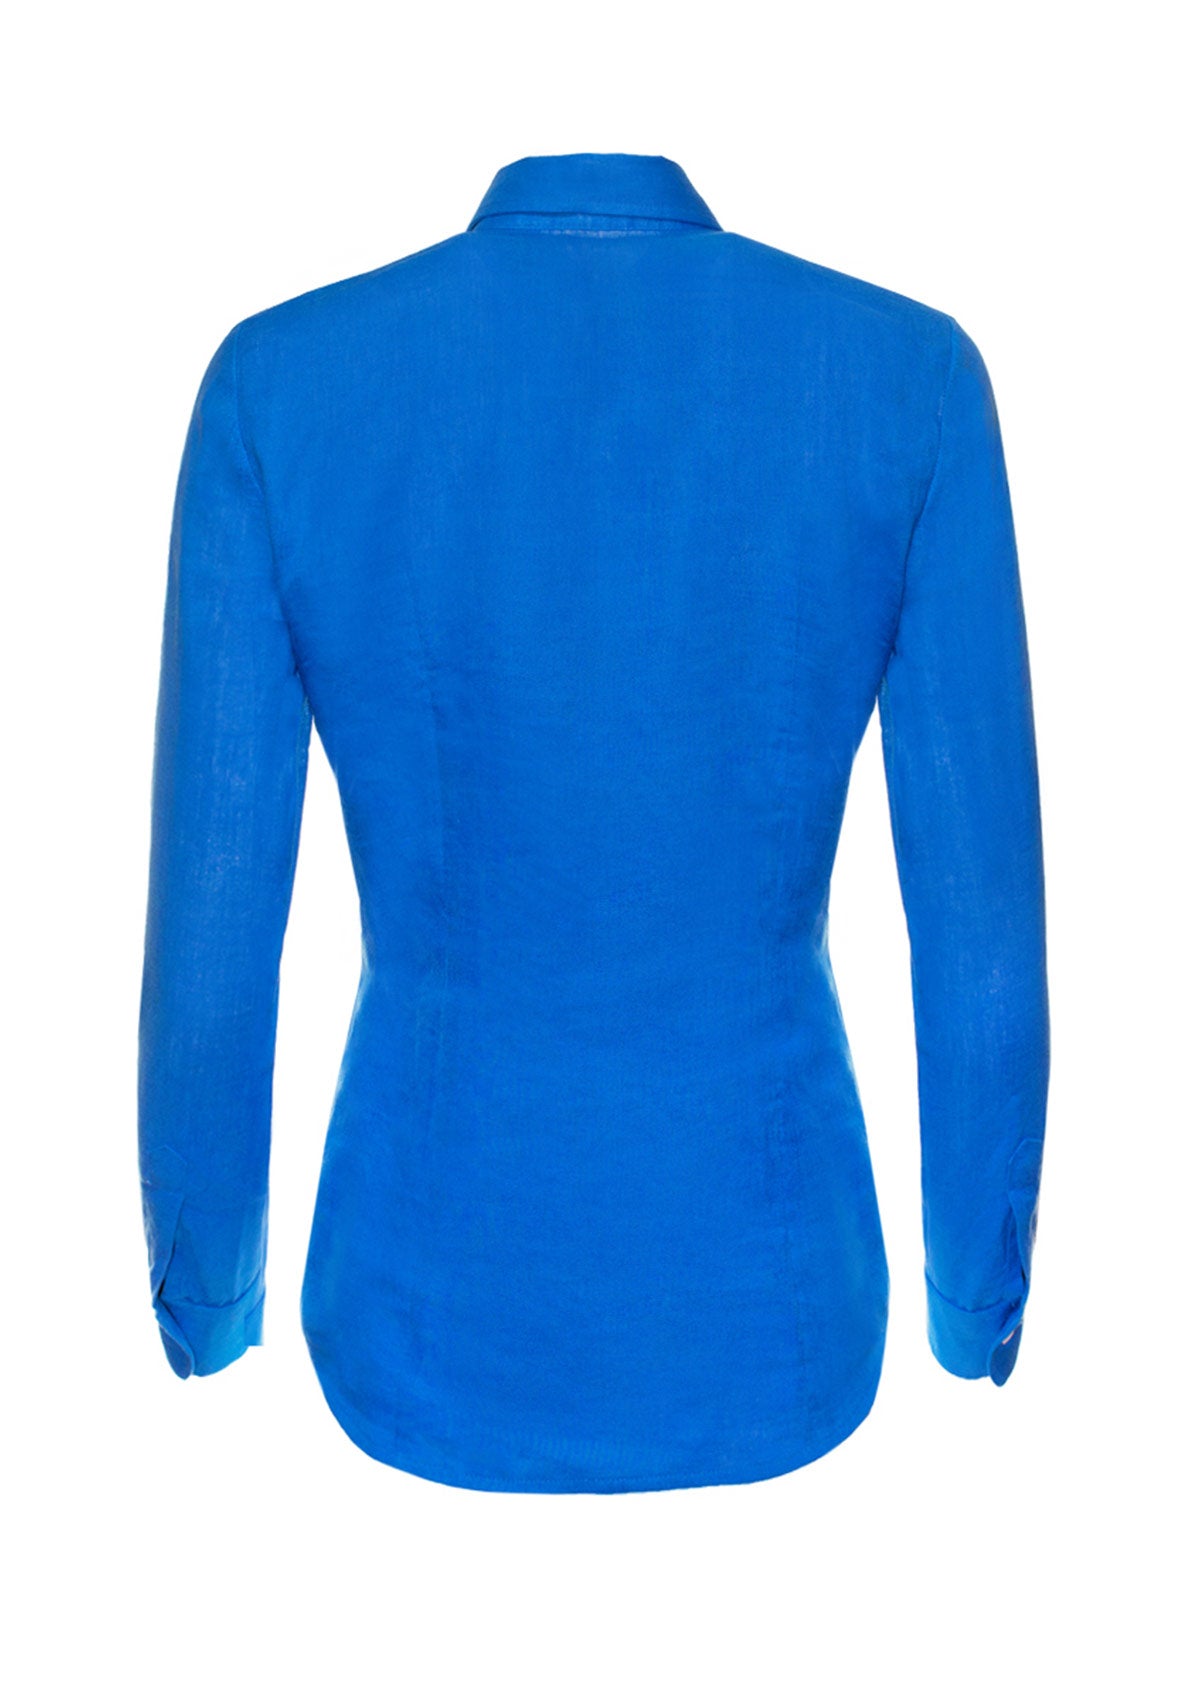 Дамска синя ленена риза CAMELINA BLUE плажно облекло летен тоалет лятна визия плажна риза вталена риза ленени дрехи